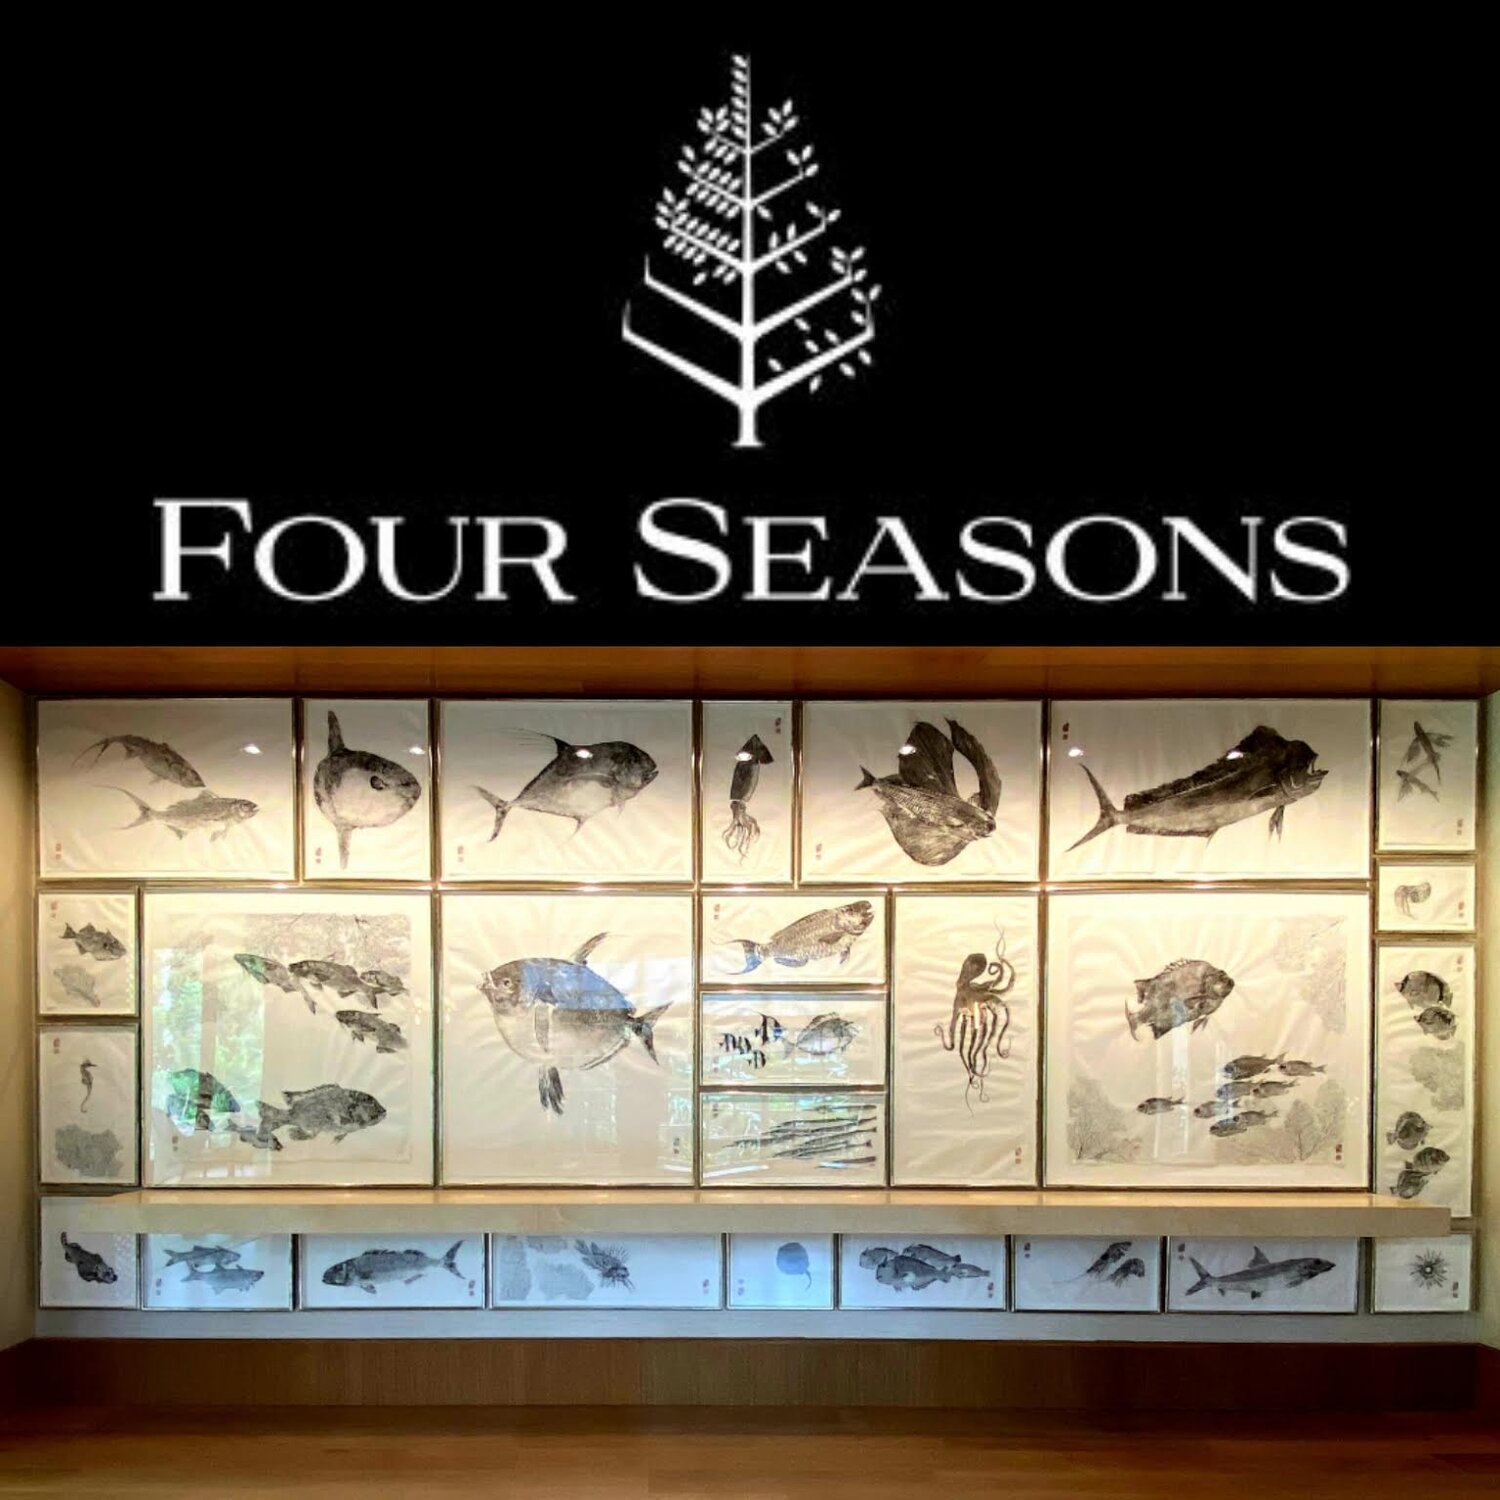 Four Seasons Sensei Lanai – 27 Piece Commission Installed!!